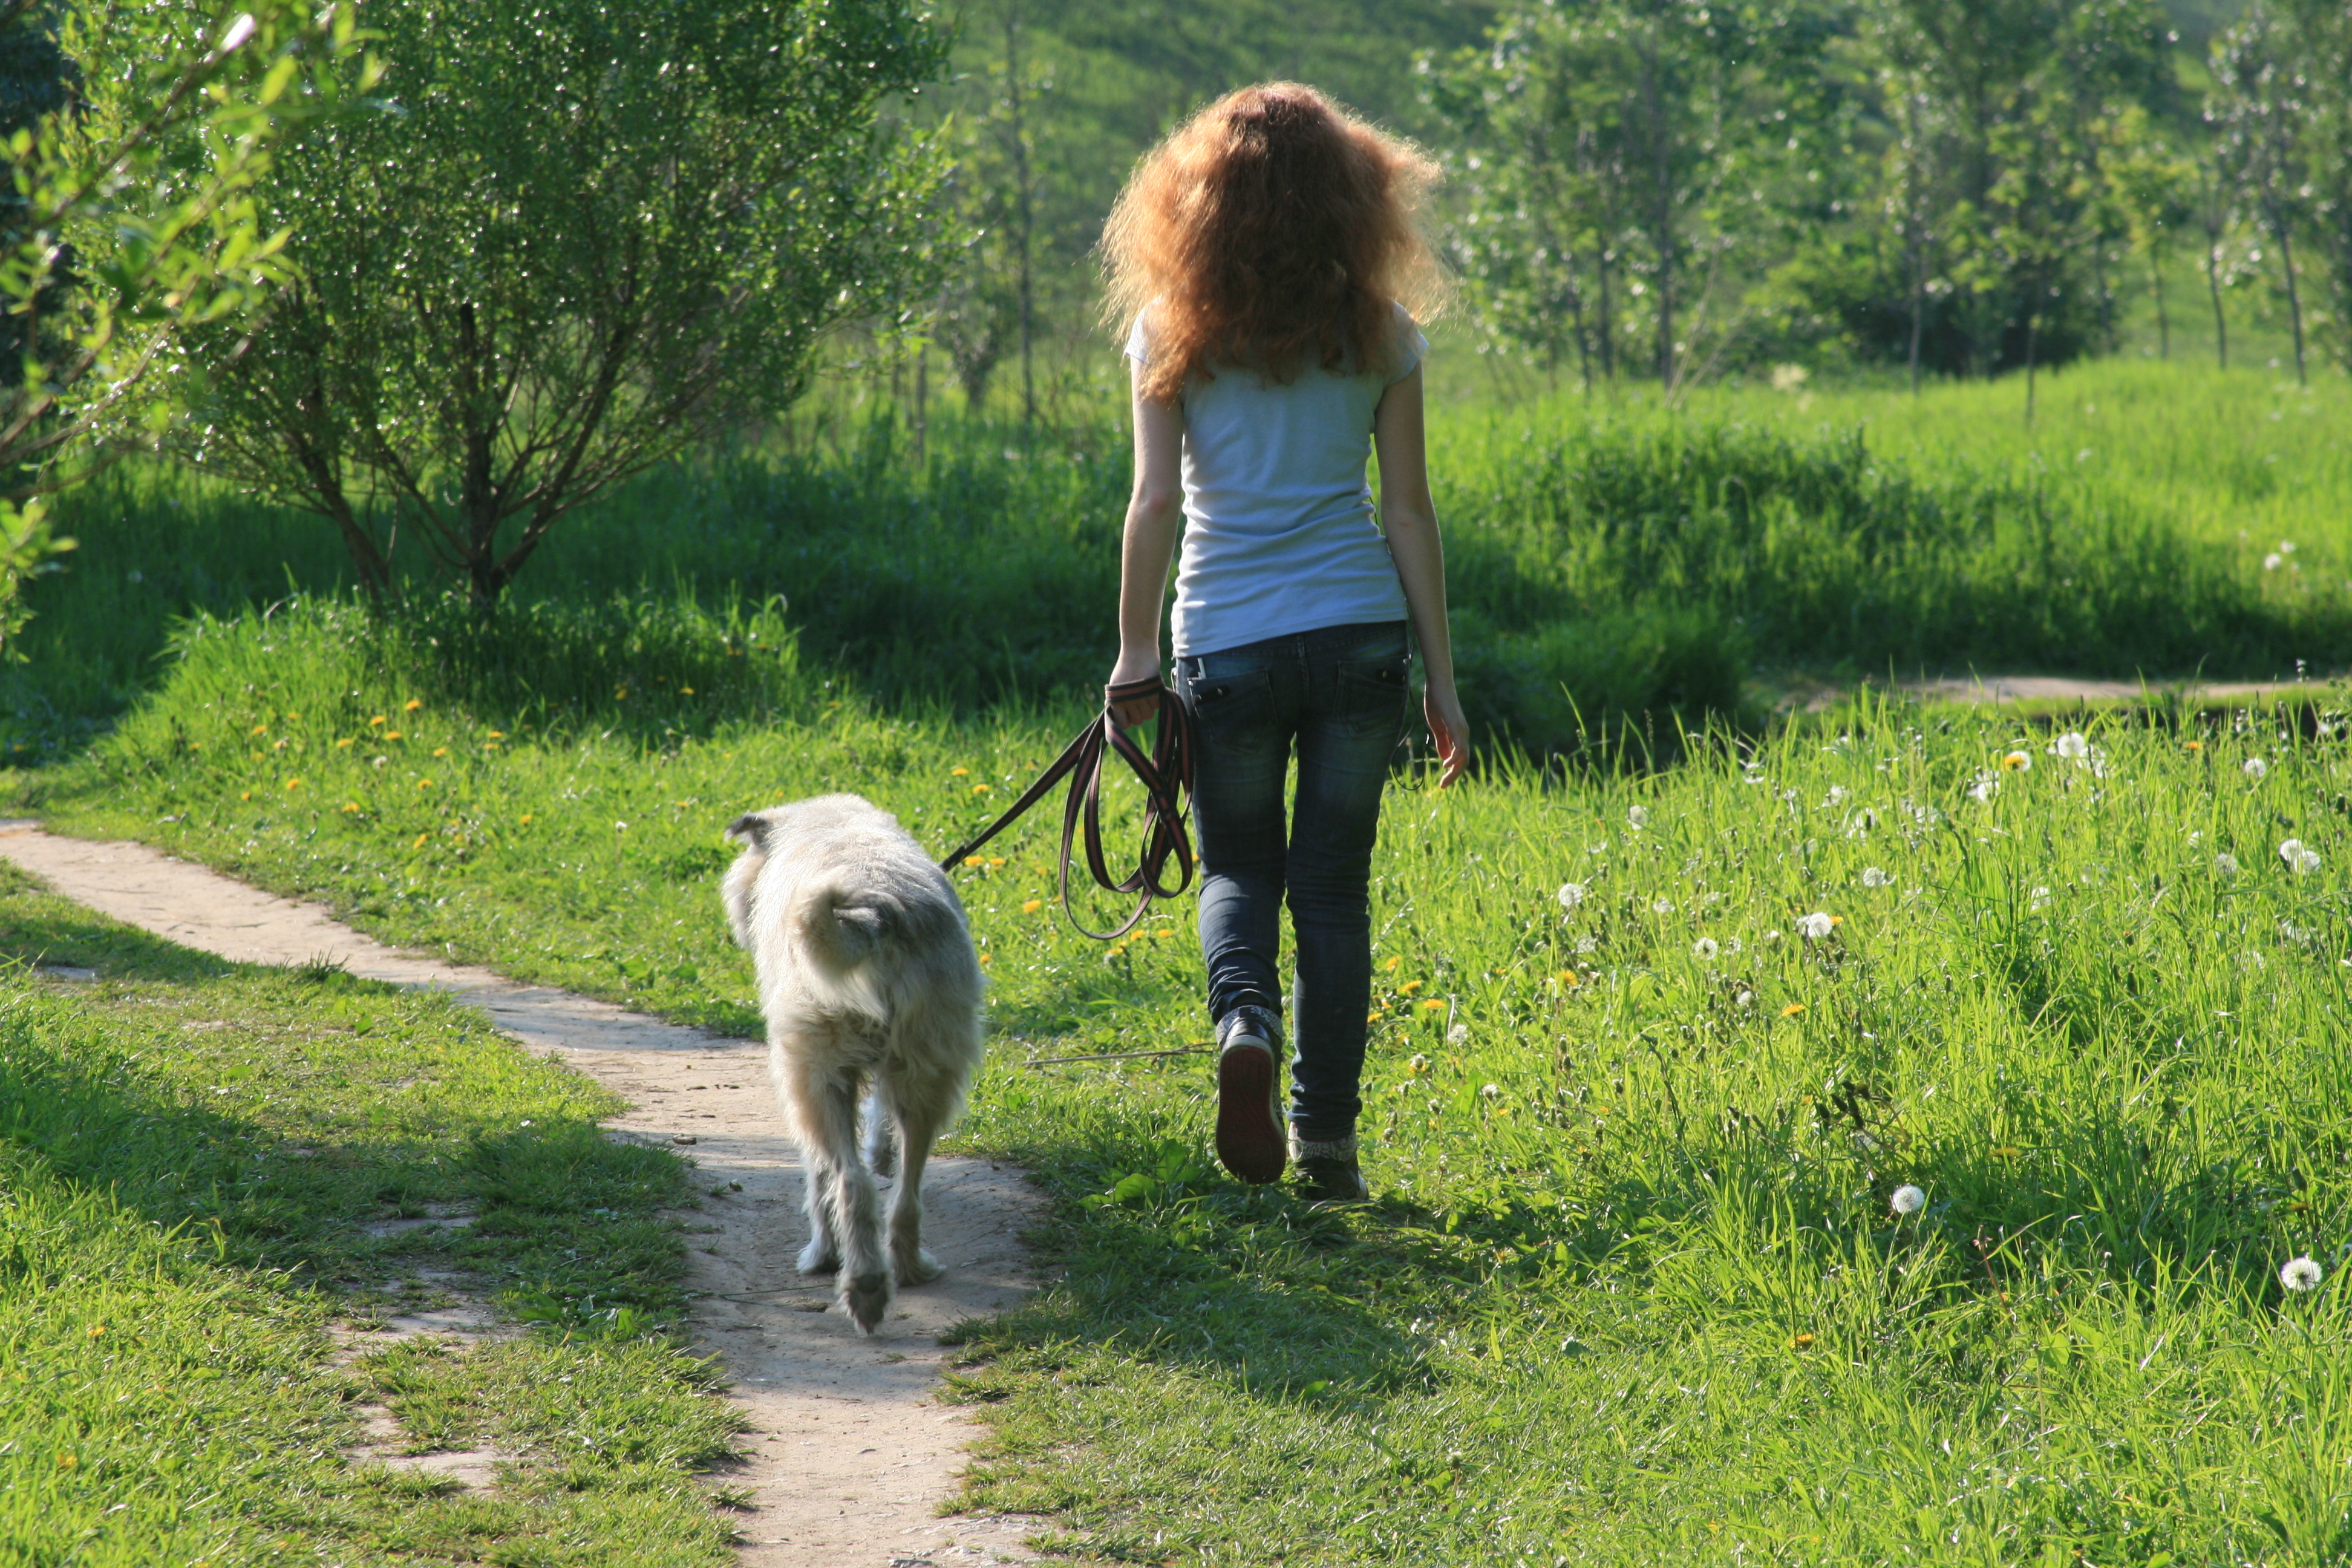 Гуляю в 4 утра. Девочка с собакой. Девушка гуляет с собакой на поводке. Девушка гуляет с собакой. Девушка на прогулке с собакой.